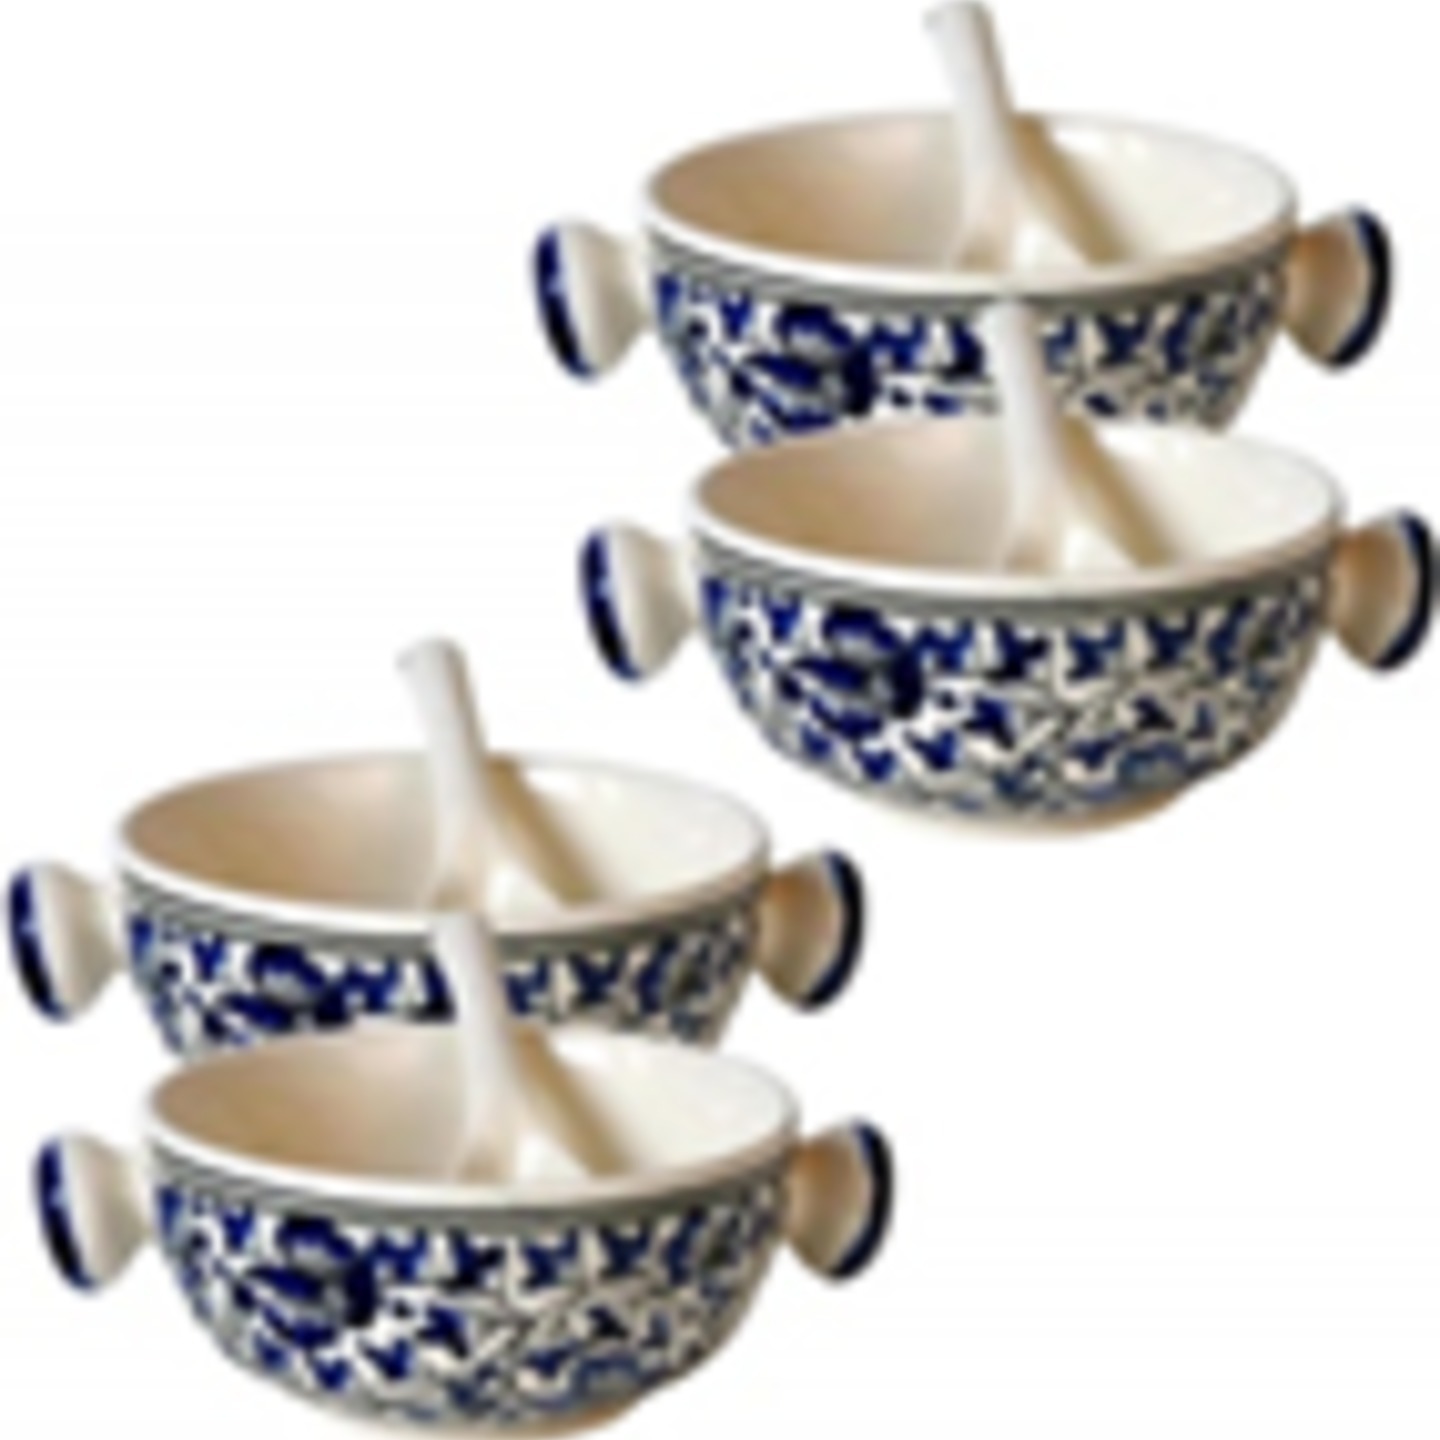 Blue Pottery Ceramic Jumbo Soup Bowl Set of 4 Bowls with Spoons  Ceramic 4 Bowls, 4 Spoons,Blue,Set of 4, Blue Flower Pattern, 100 Microwave Safe